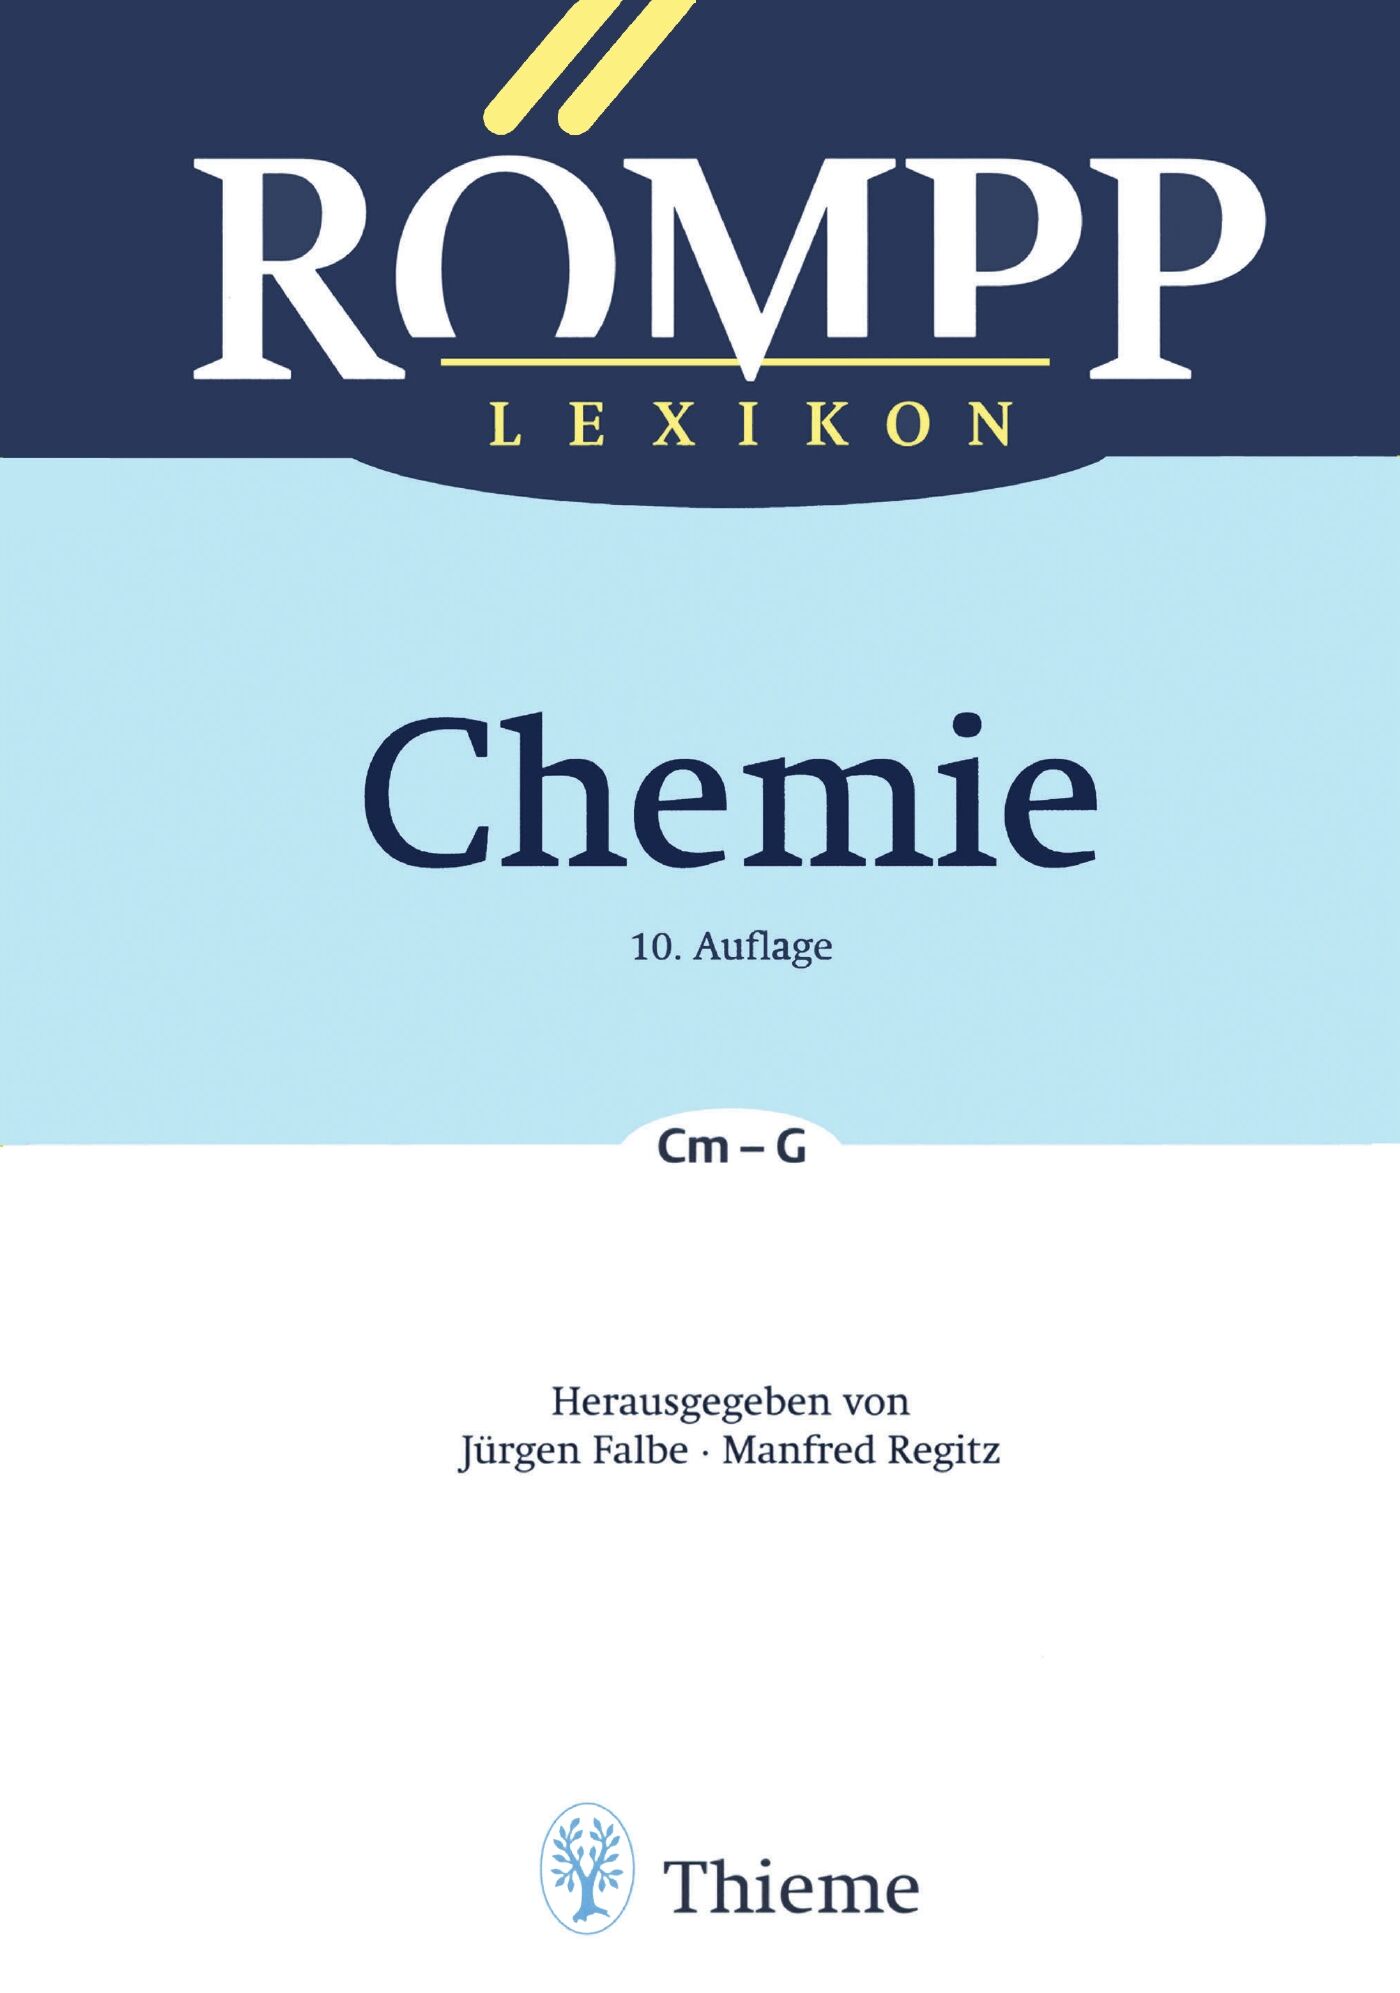 RÖMPP Lexikon Chemie, 10. Auflage, 1996-1999, 9783131999818